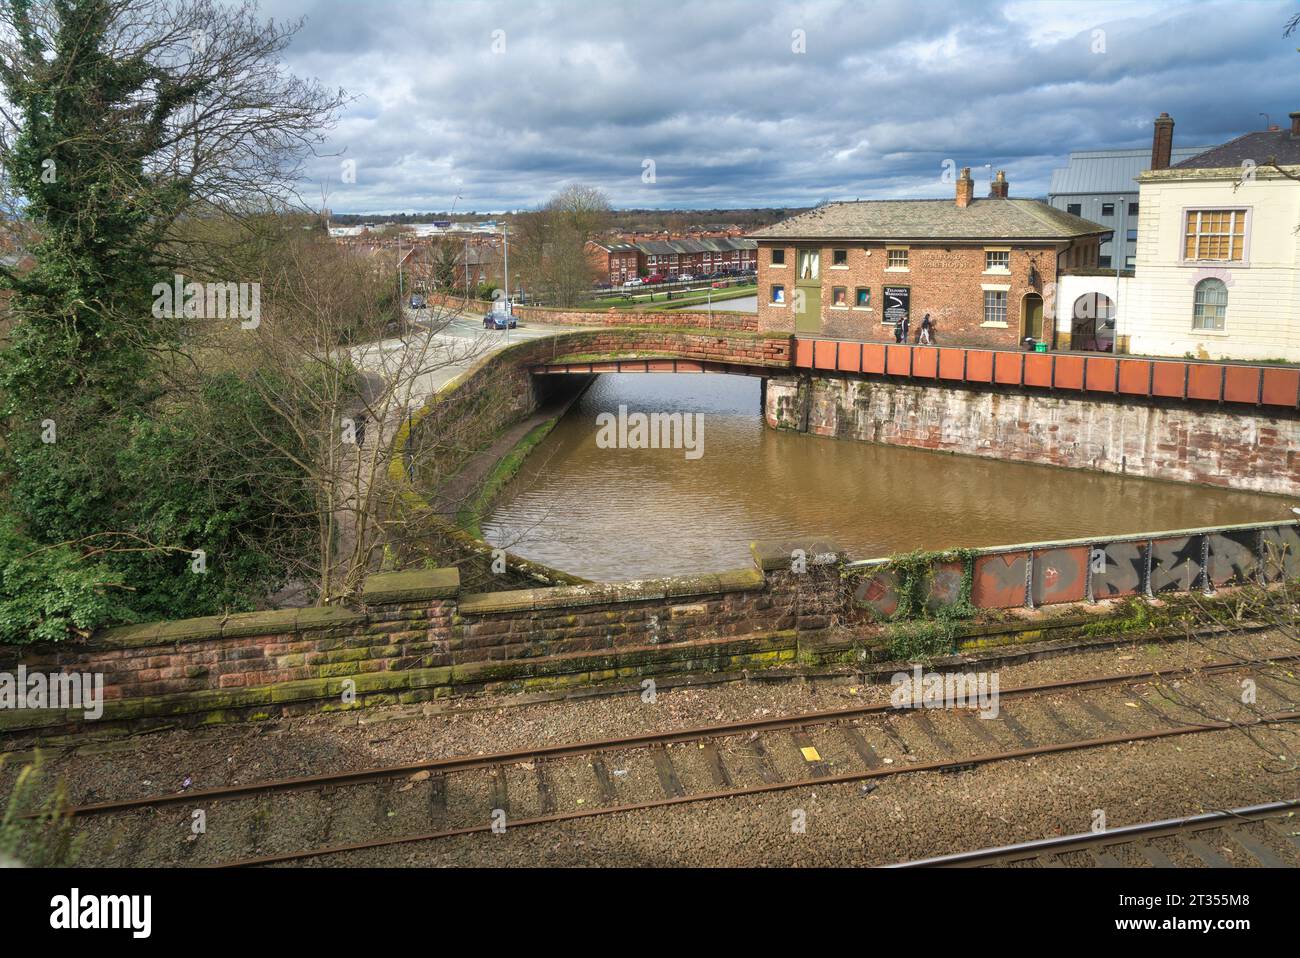 Sto cercando il bacino di telford e il magazzino di Telford. Shropshire Union Canal. Preso dalle mura della città al Raymond Street Bridge. Chester, Inghilterra, Regno Unito Foto Stock